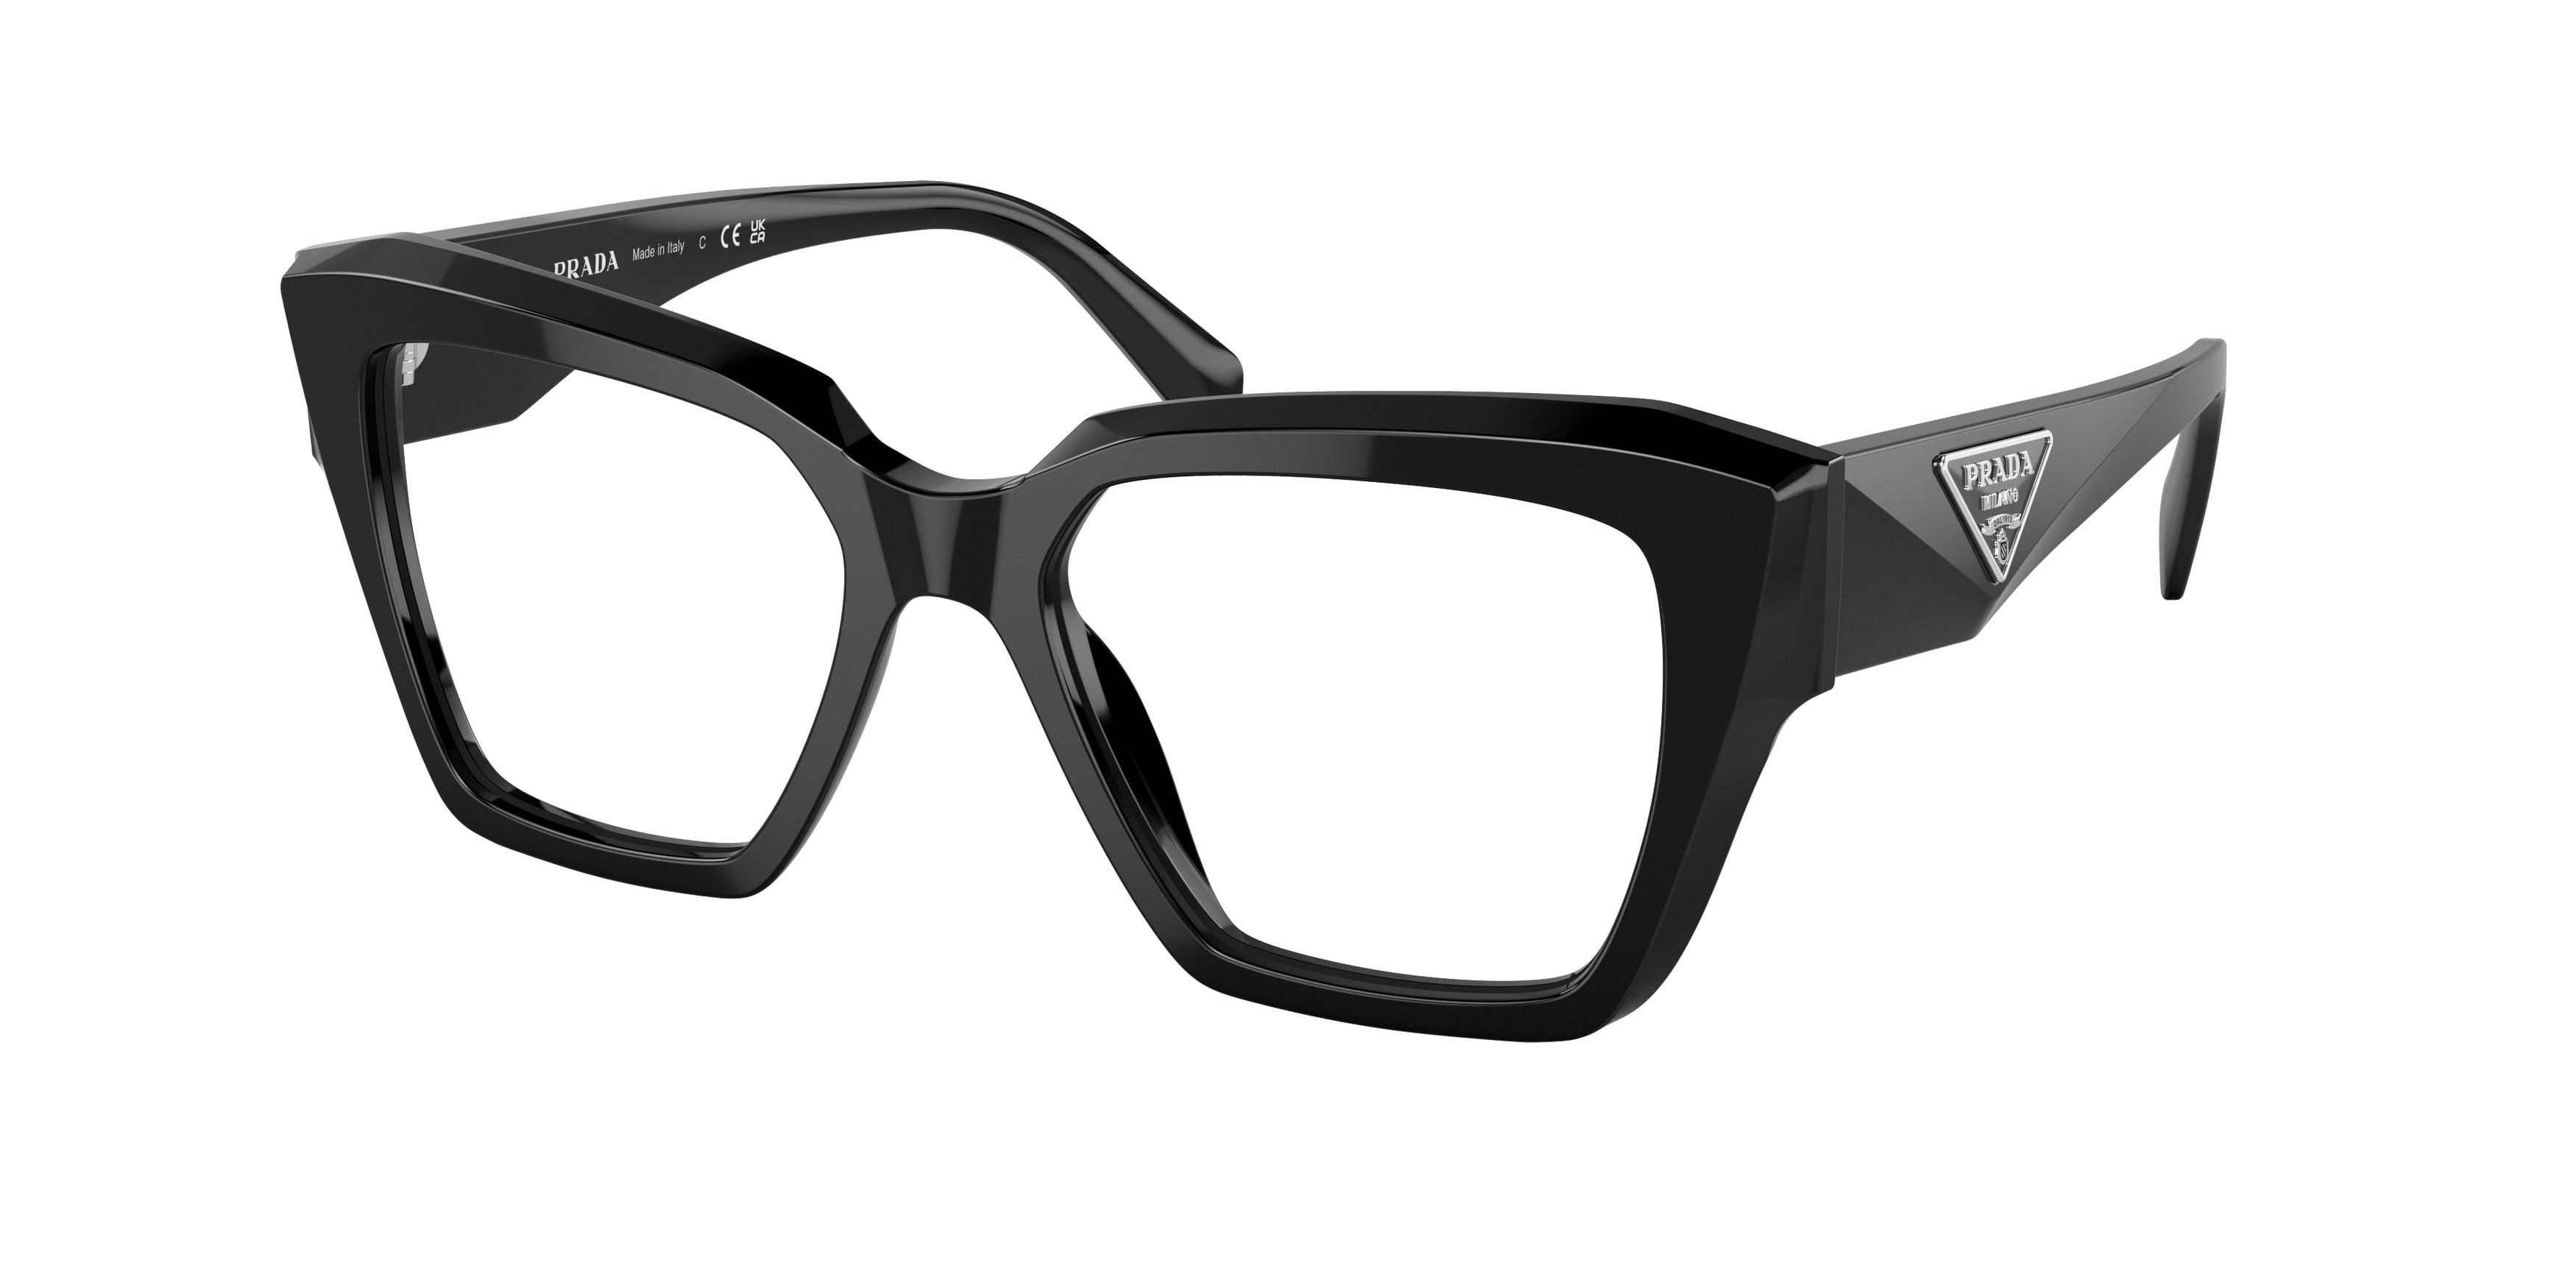 Prada PR09ZVF Square Eyeglasses  1AB1O1-Black 52-140-16 - Color Map Black